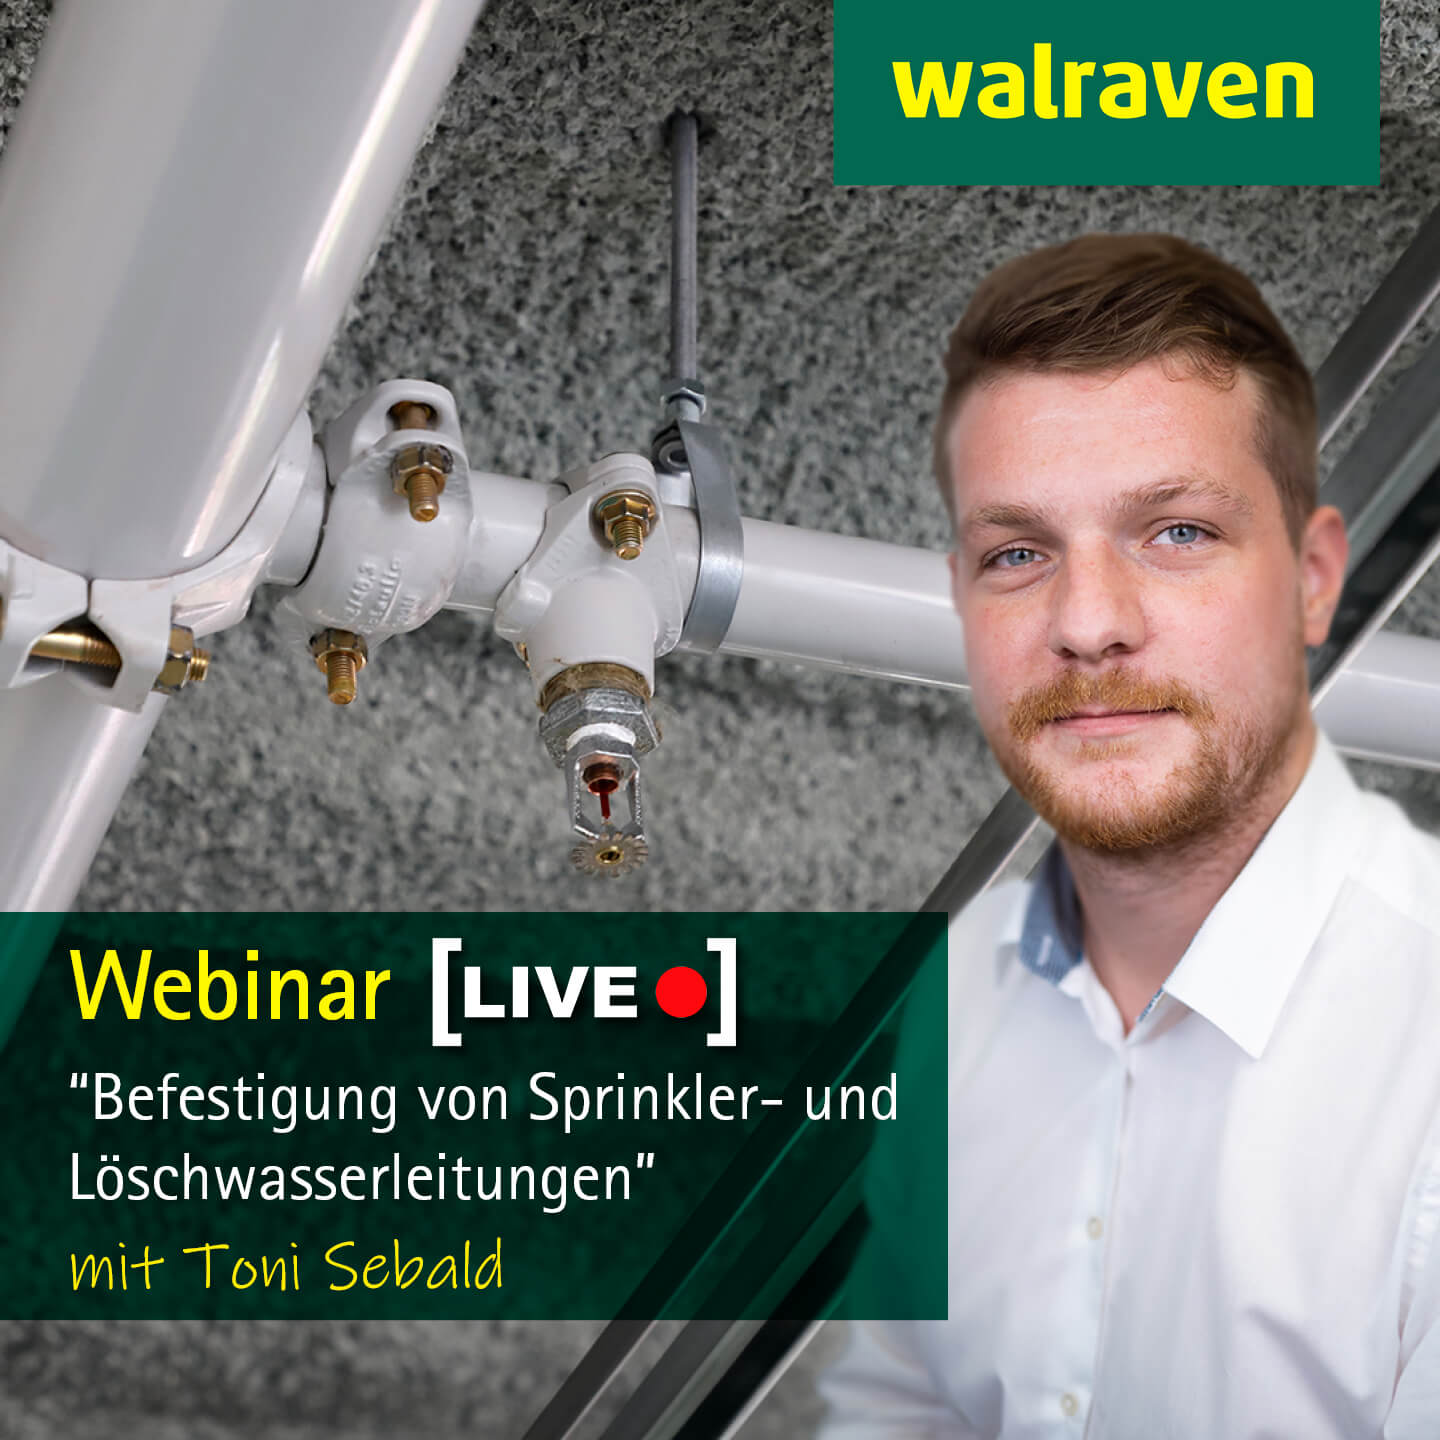 Live-Webinar „Befestigung von Sprinkler- und Löschwasserleitungen“